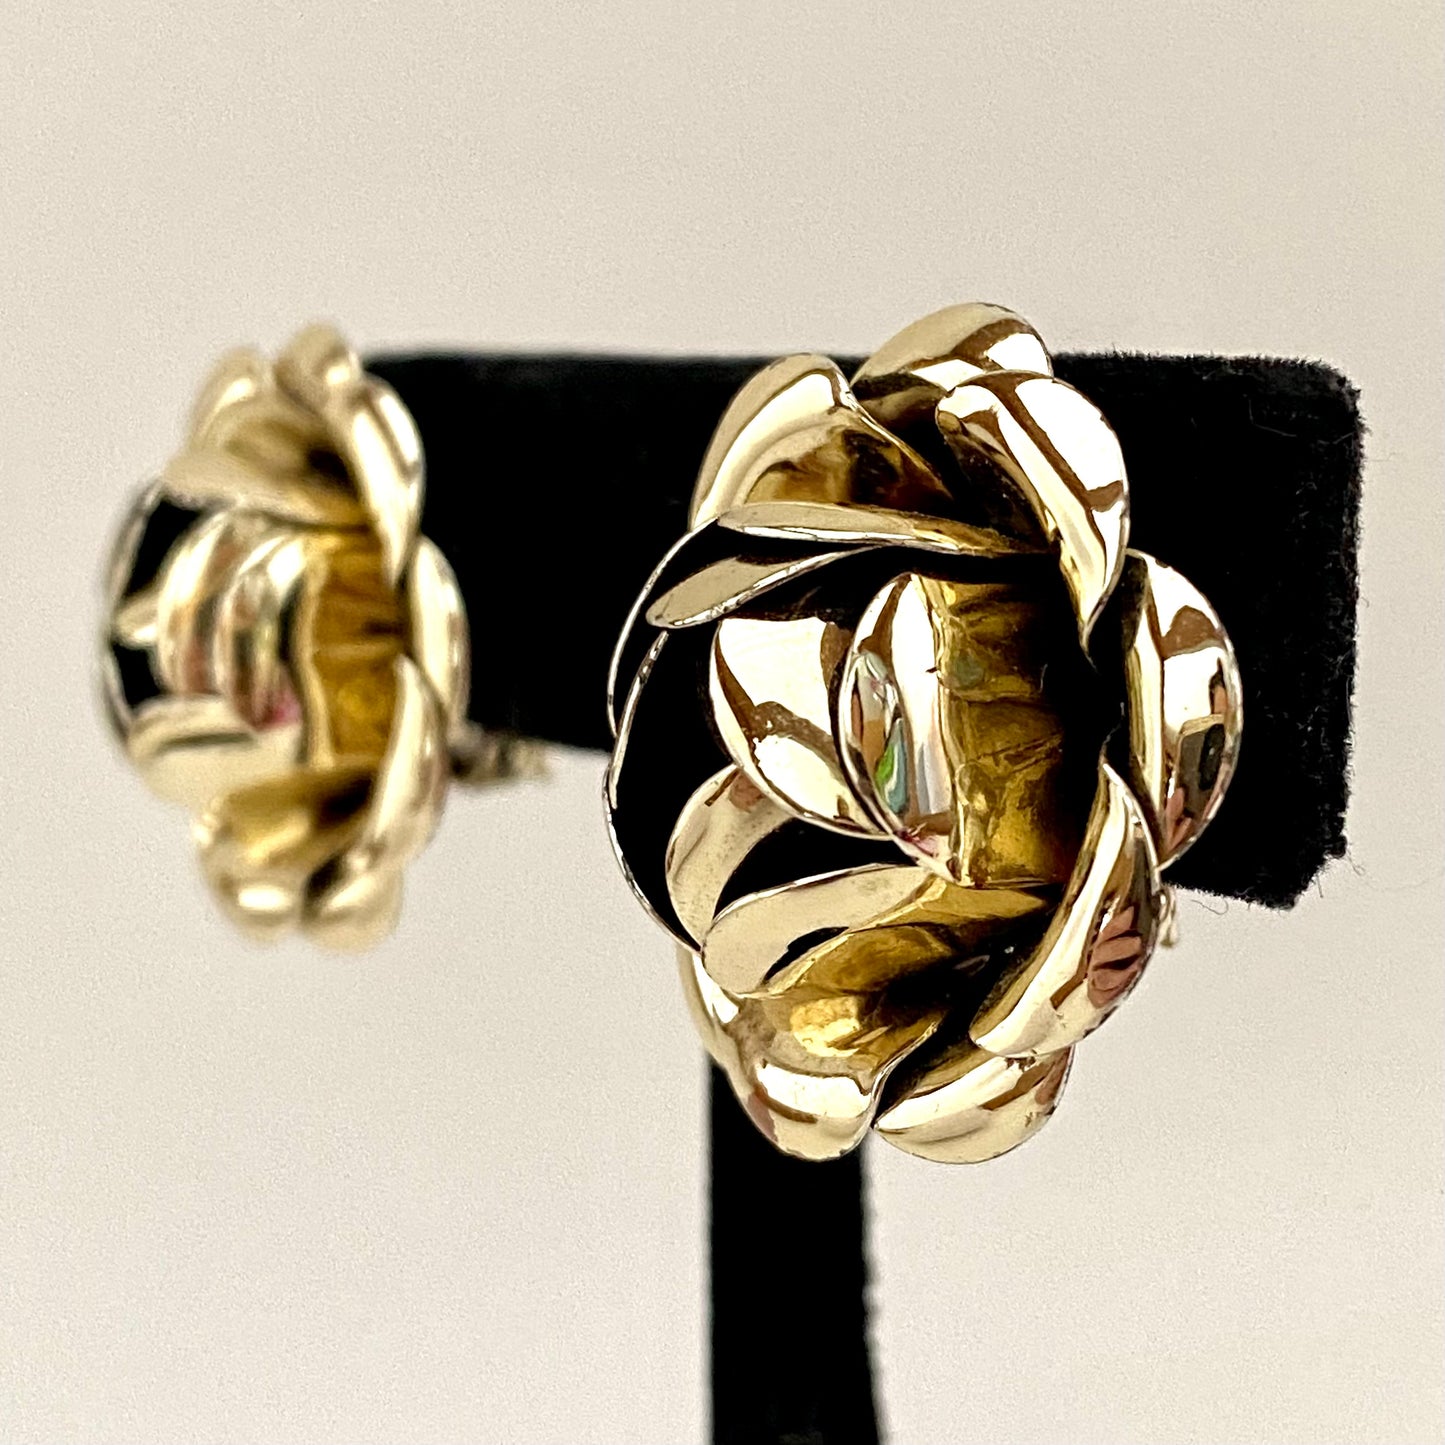 1960s Gold-Tone Flower Earrings